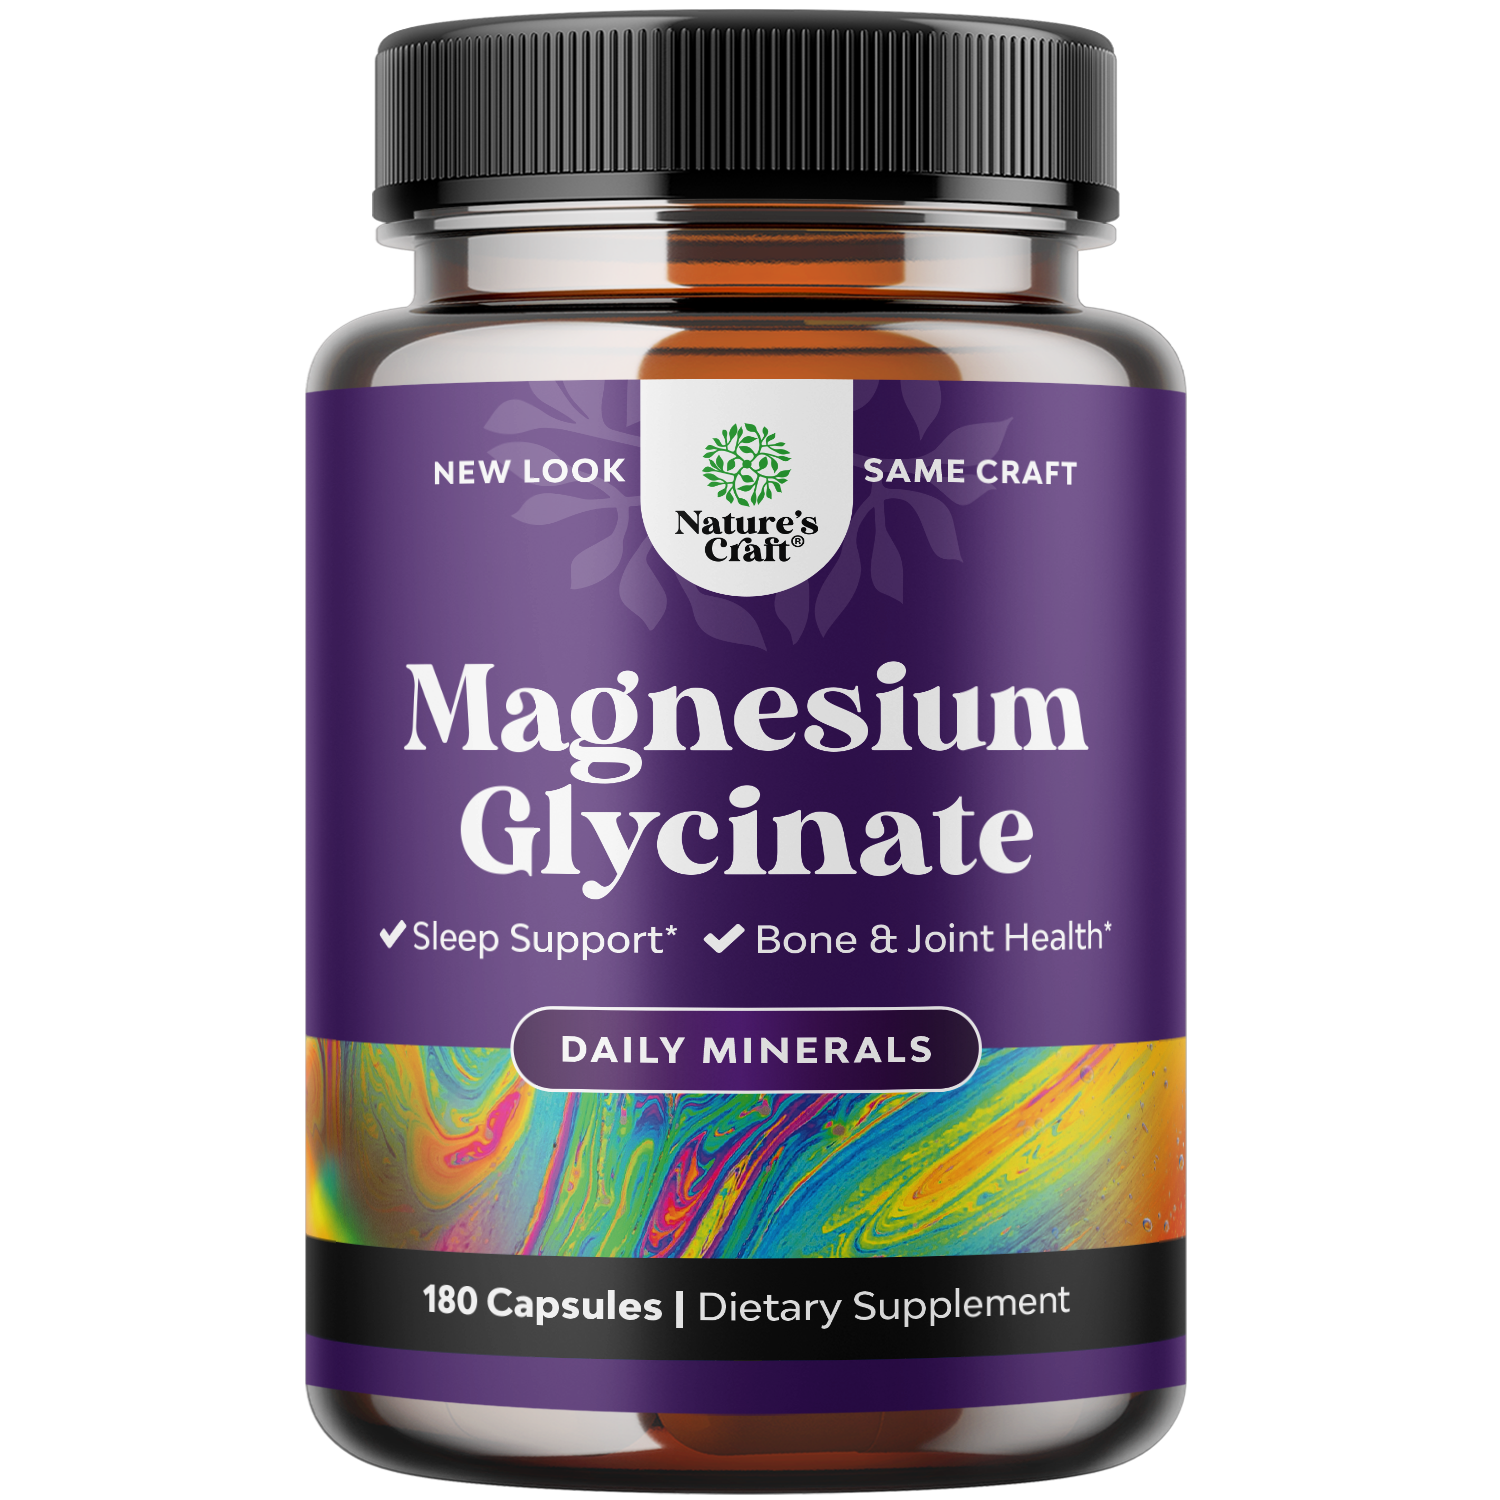 Magnesium Glycinate 400mg per serving - 180 Capsules